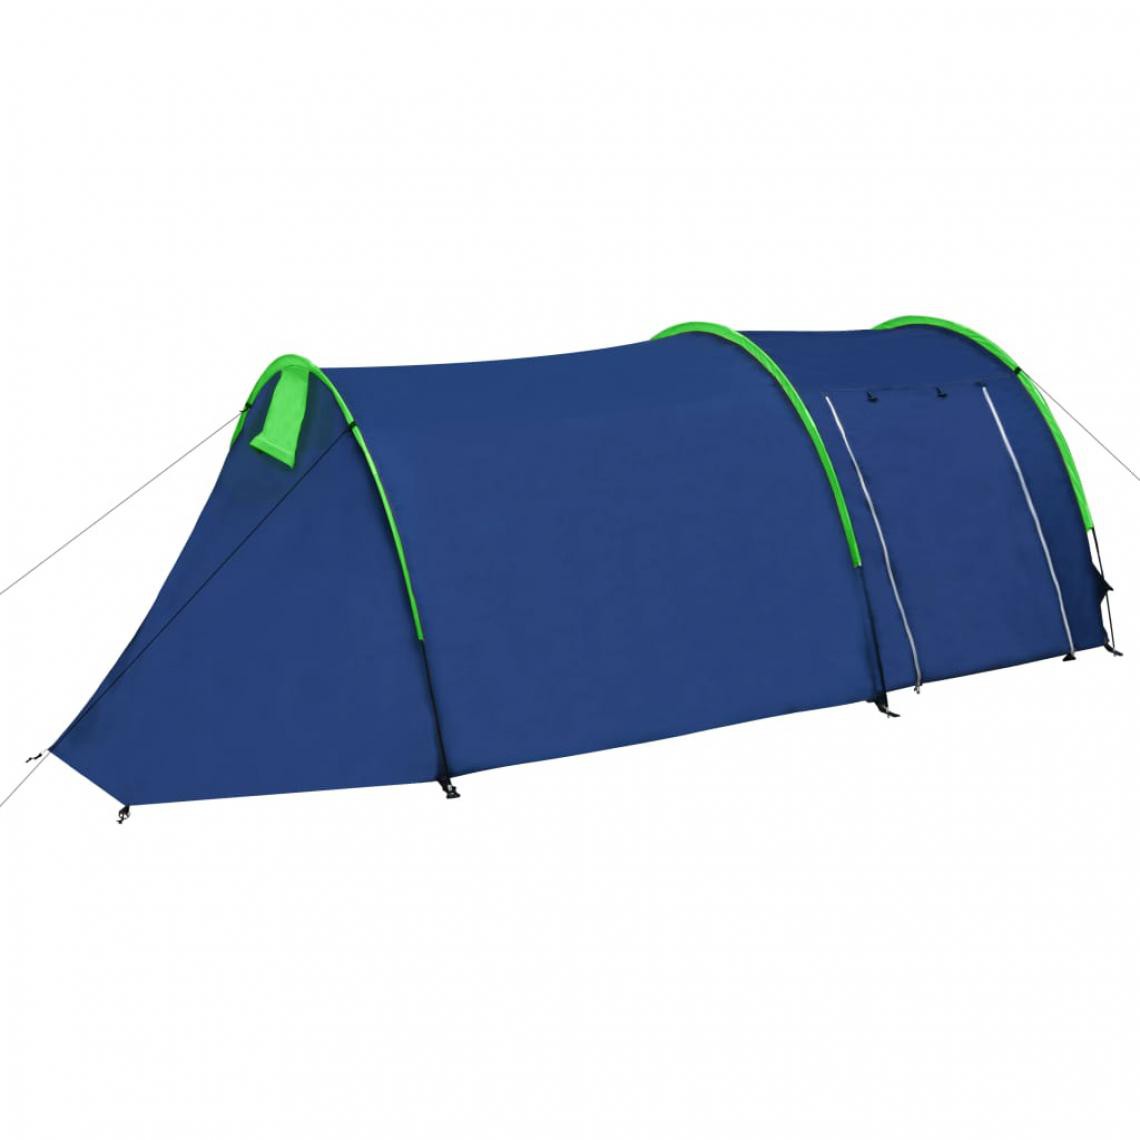 Icaverne - Contemporain Camping et randonnée serie Yamoussoukro Tente de camping imperméable 4 Personnes Bleu marin/vert - Pergolas et Tonnelles